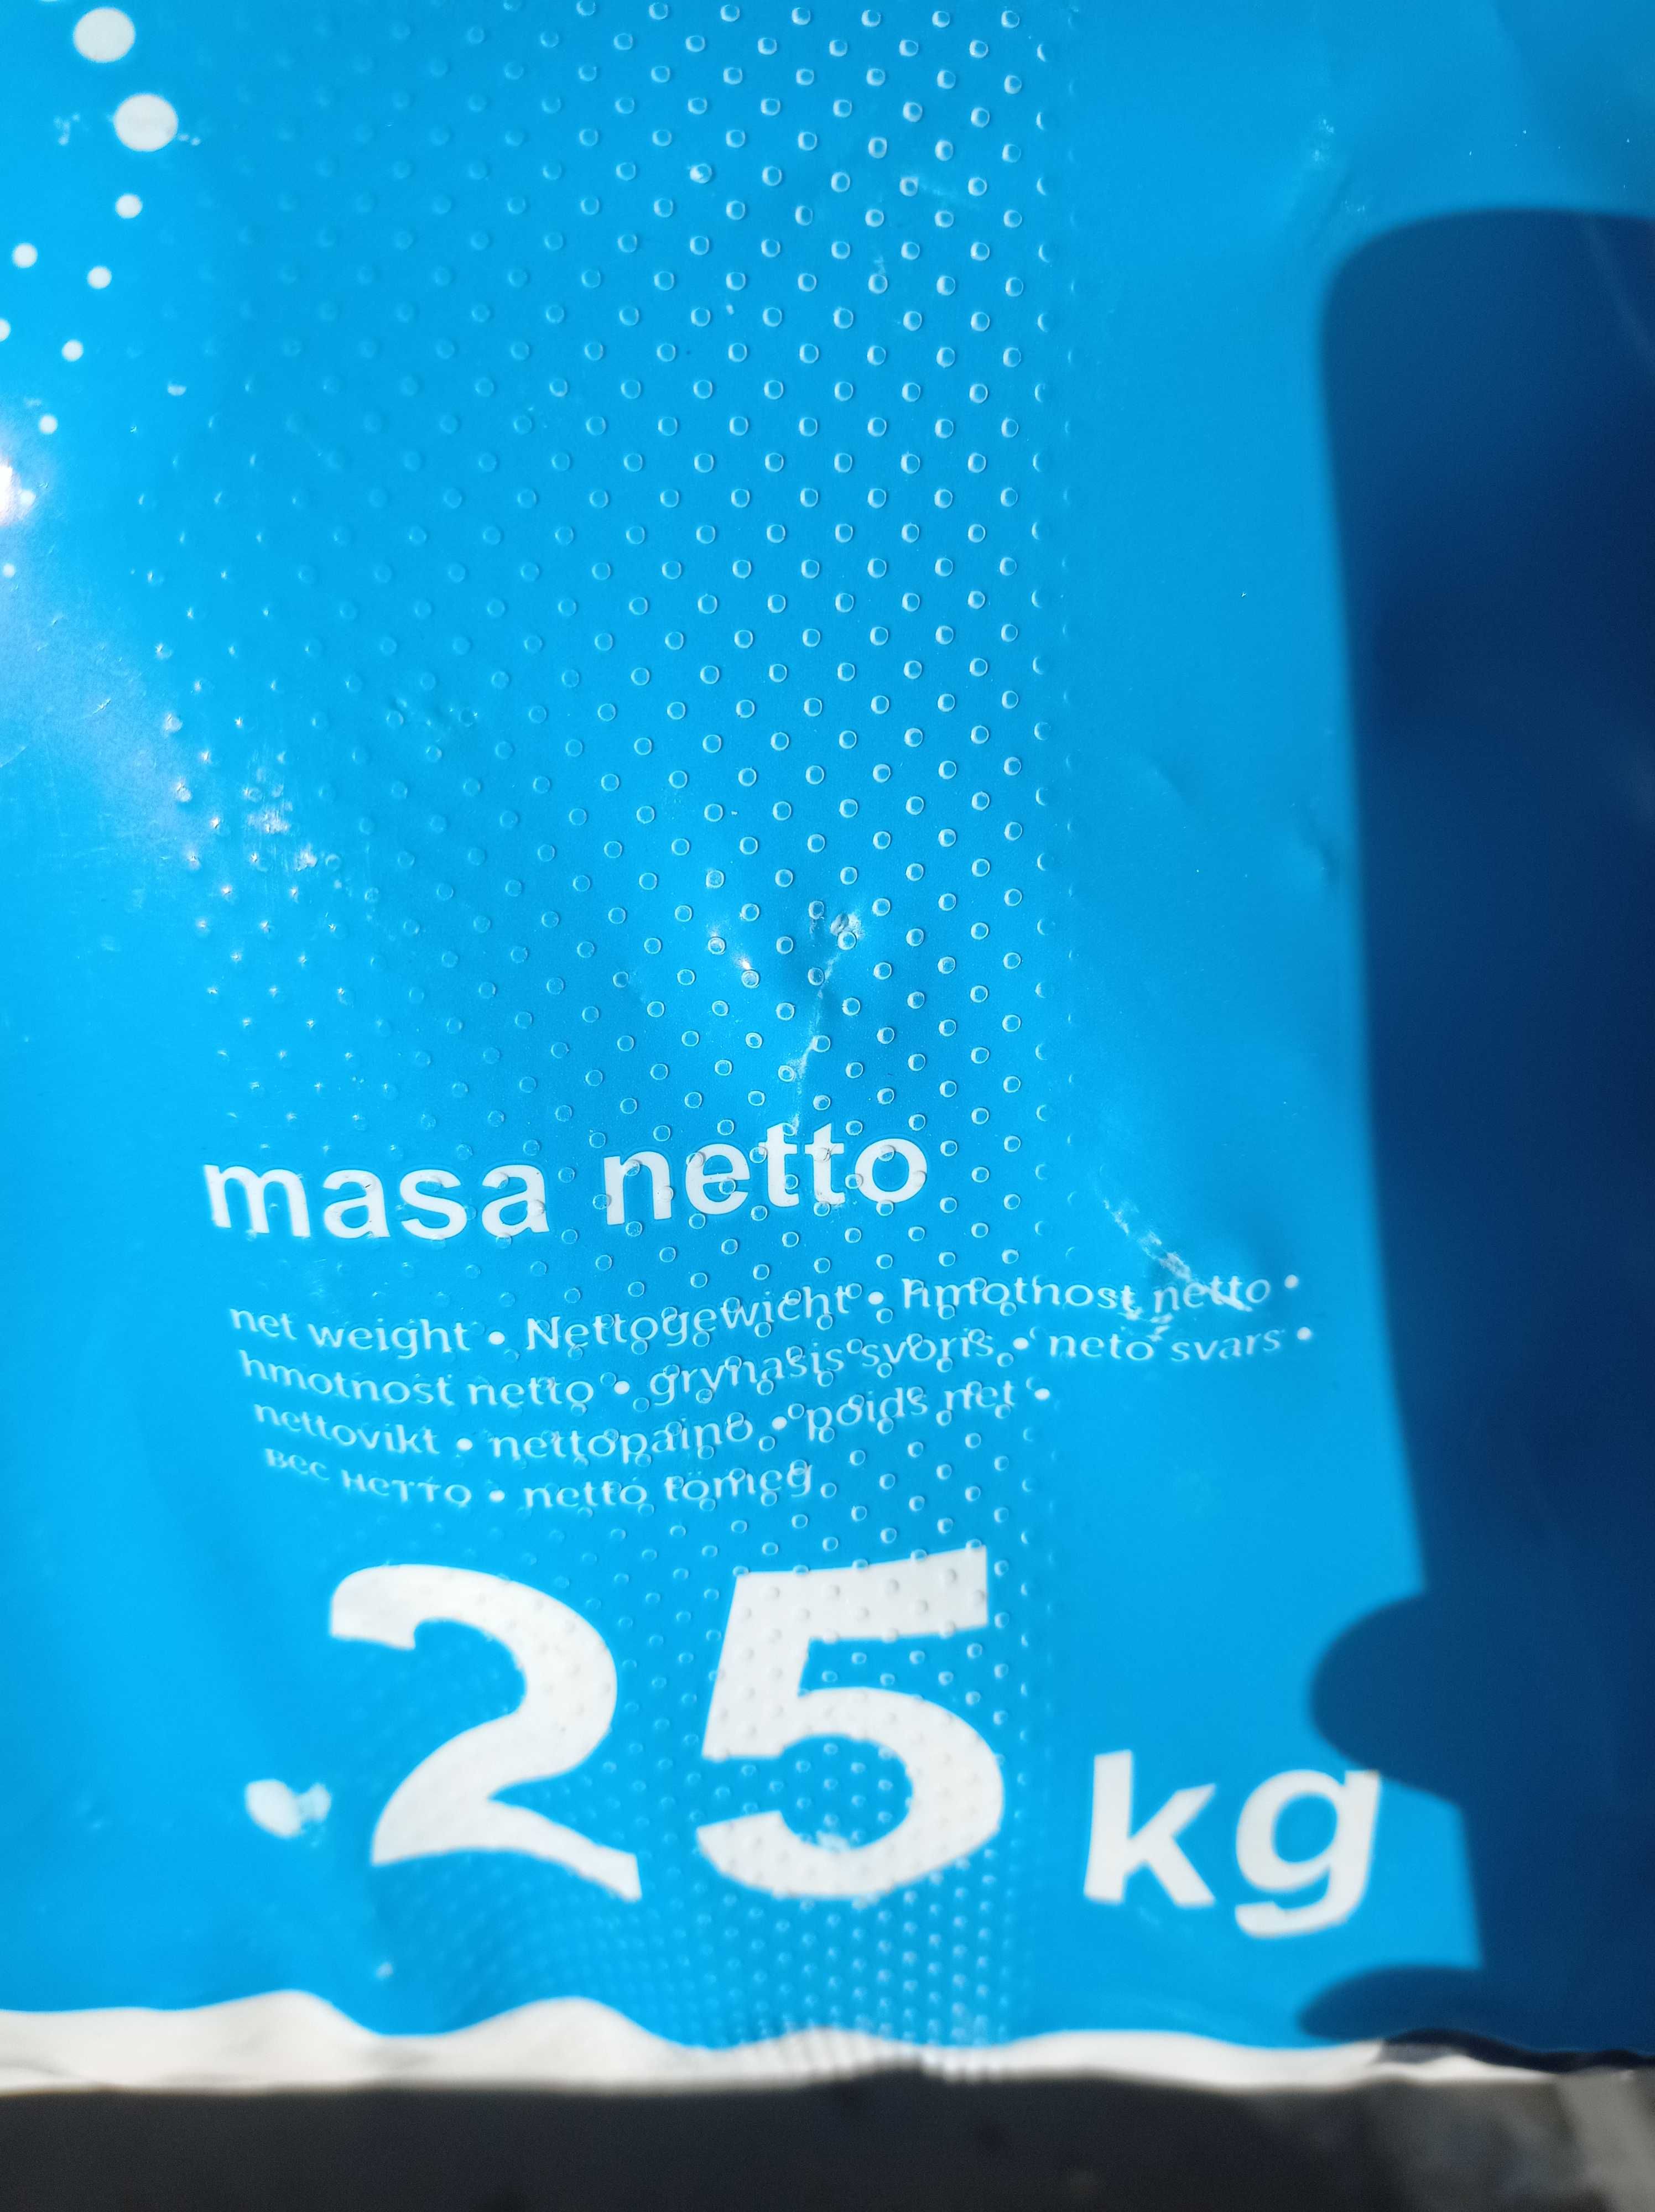 Сіль таблетована для водопідготовки  25 кг Польща